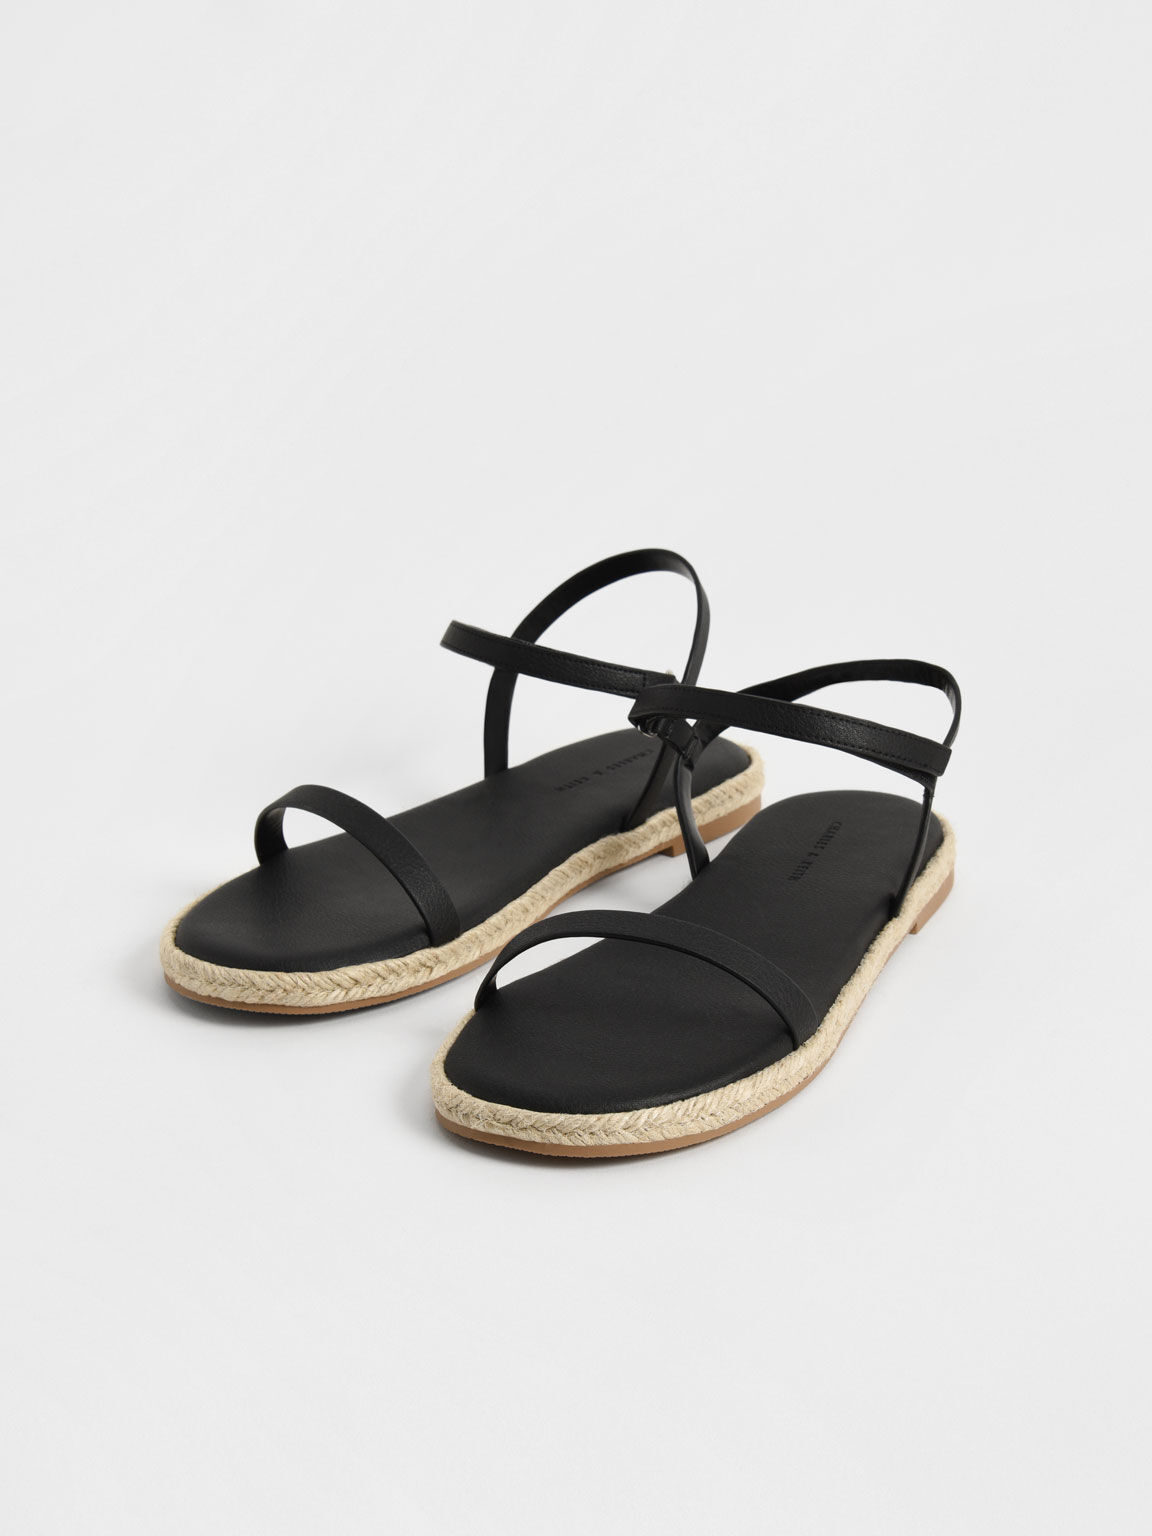 Sandal Flat Espadrille Ankle-Strap, Black, hi-res